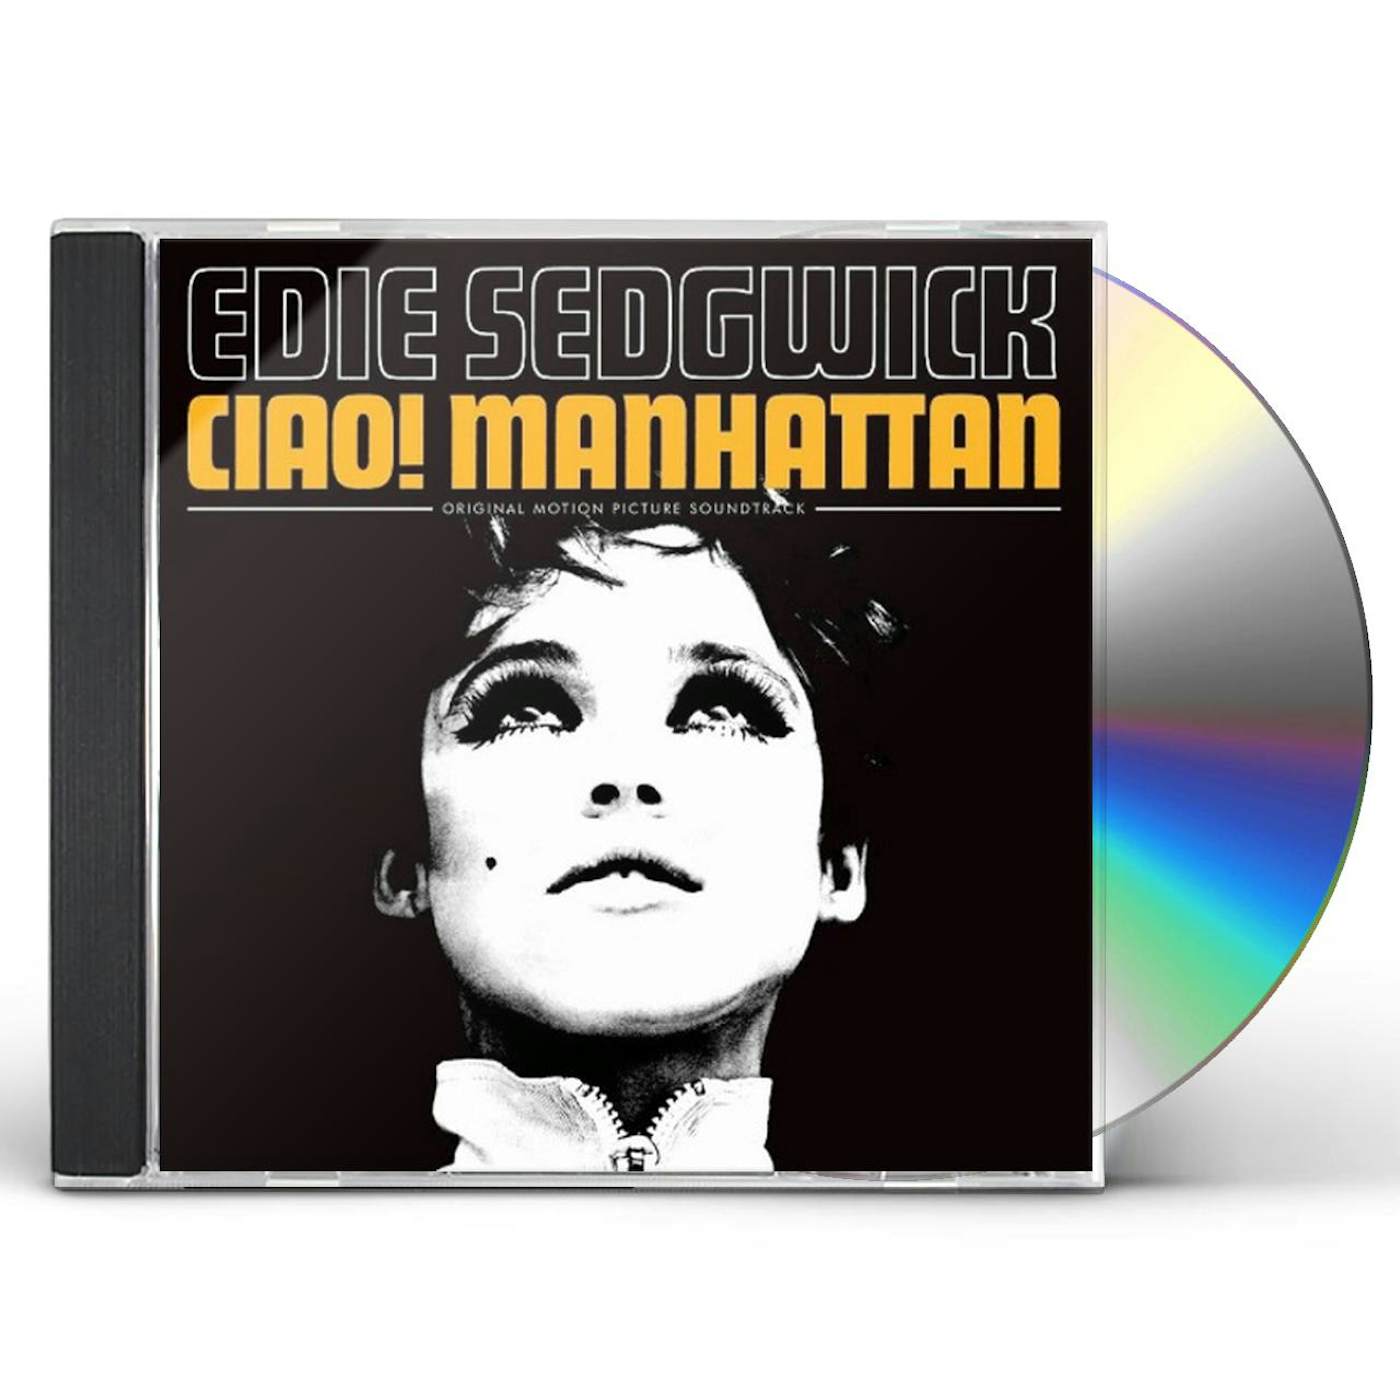 Ciao! Manhattan CIAO MANHATTAN / Original Soundtrack CD